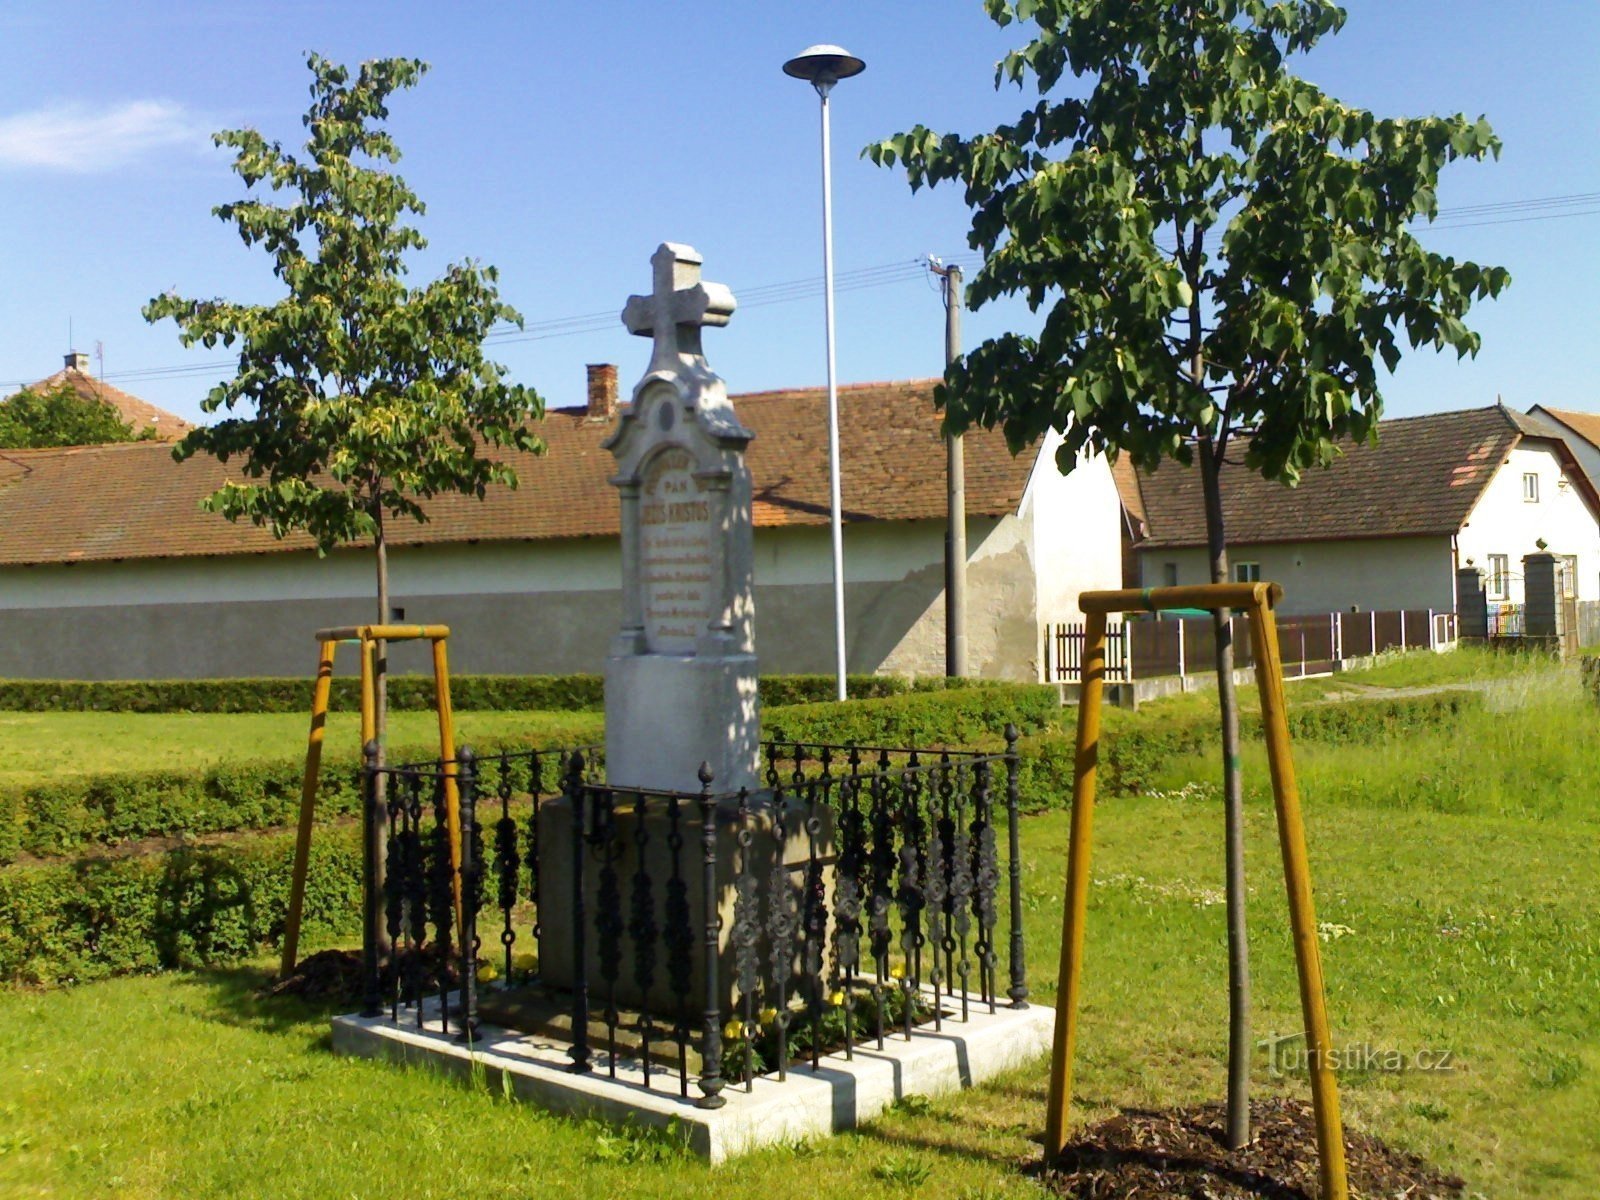 Хотеч - хрест, присвячений Францішку Мрнявеку